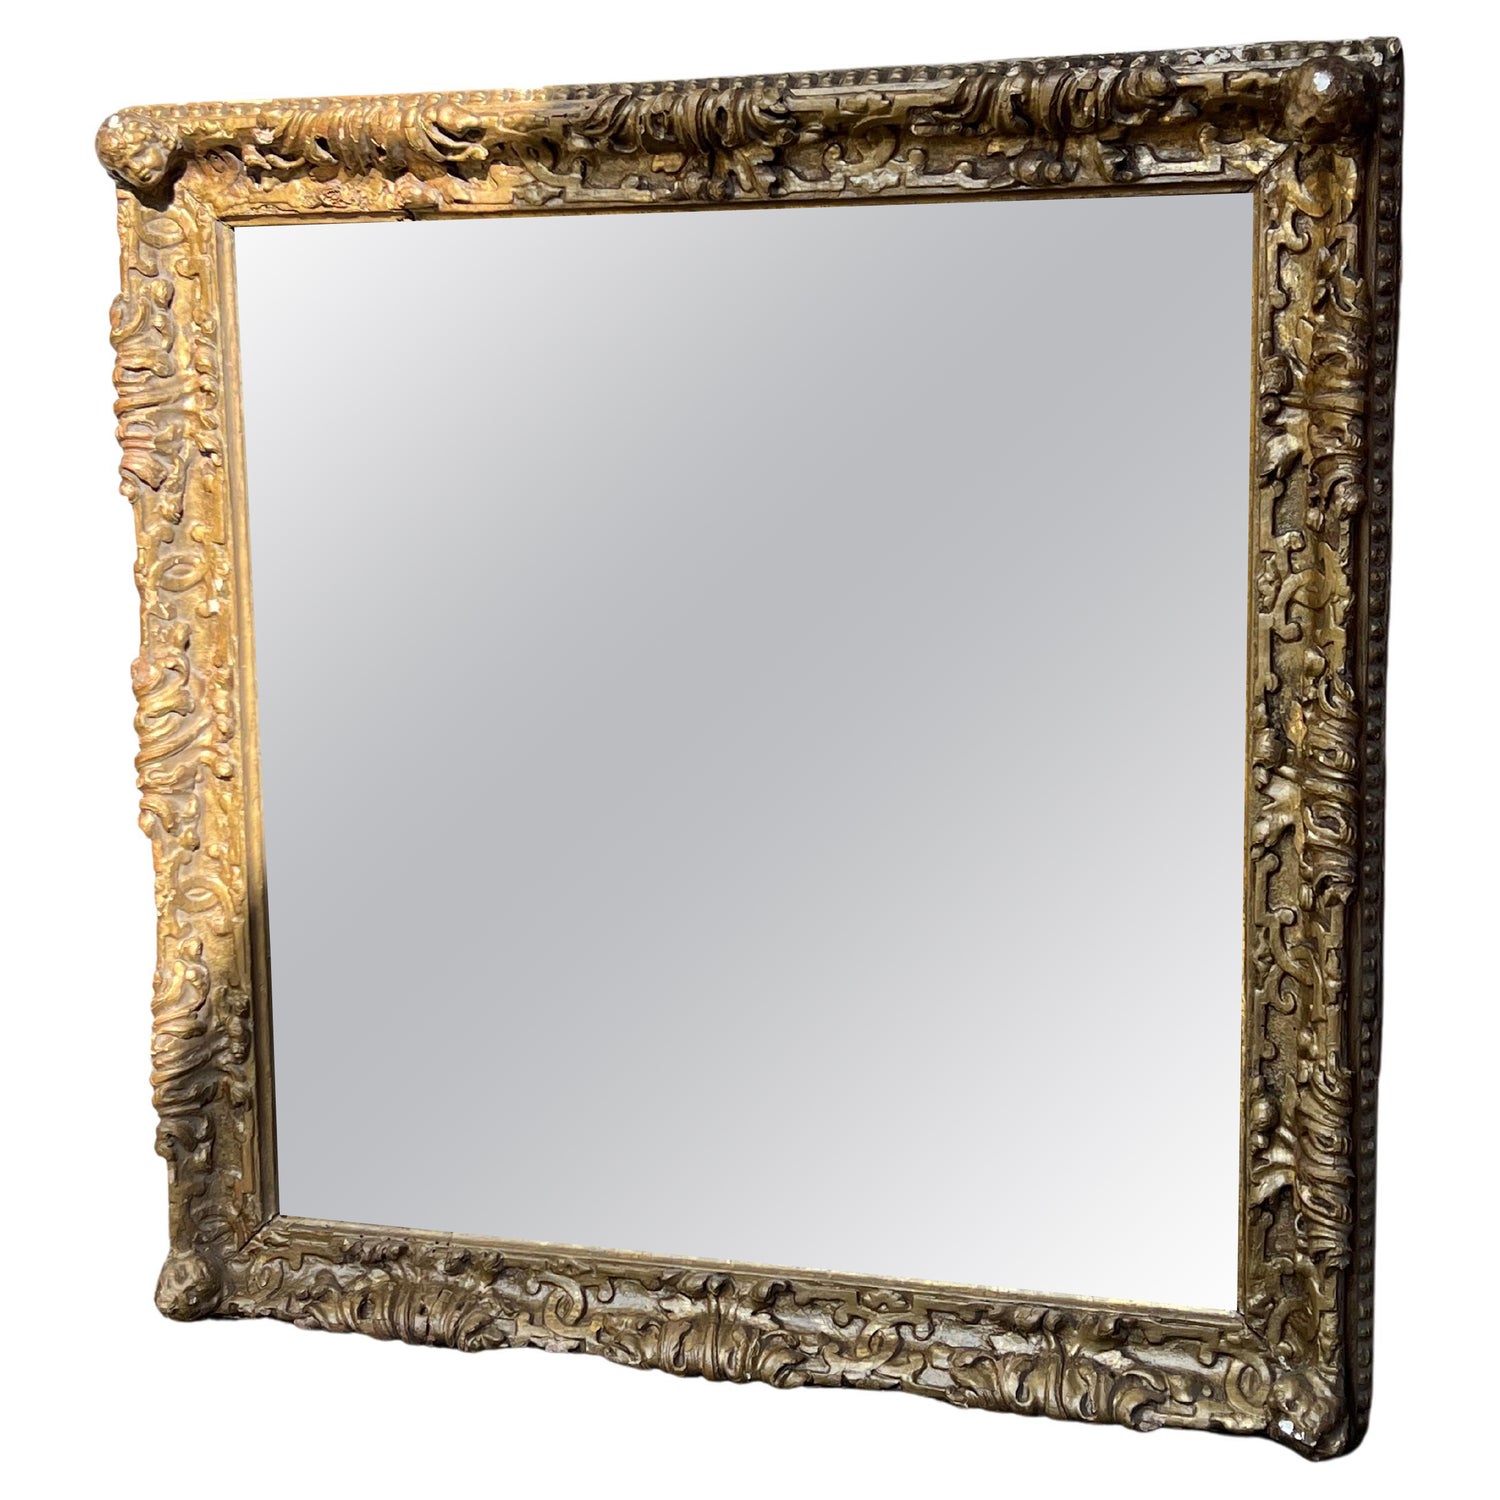 Specchio da parete rettangolare Charles in foglia d'oro antico